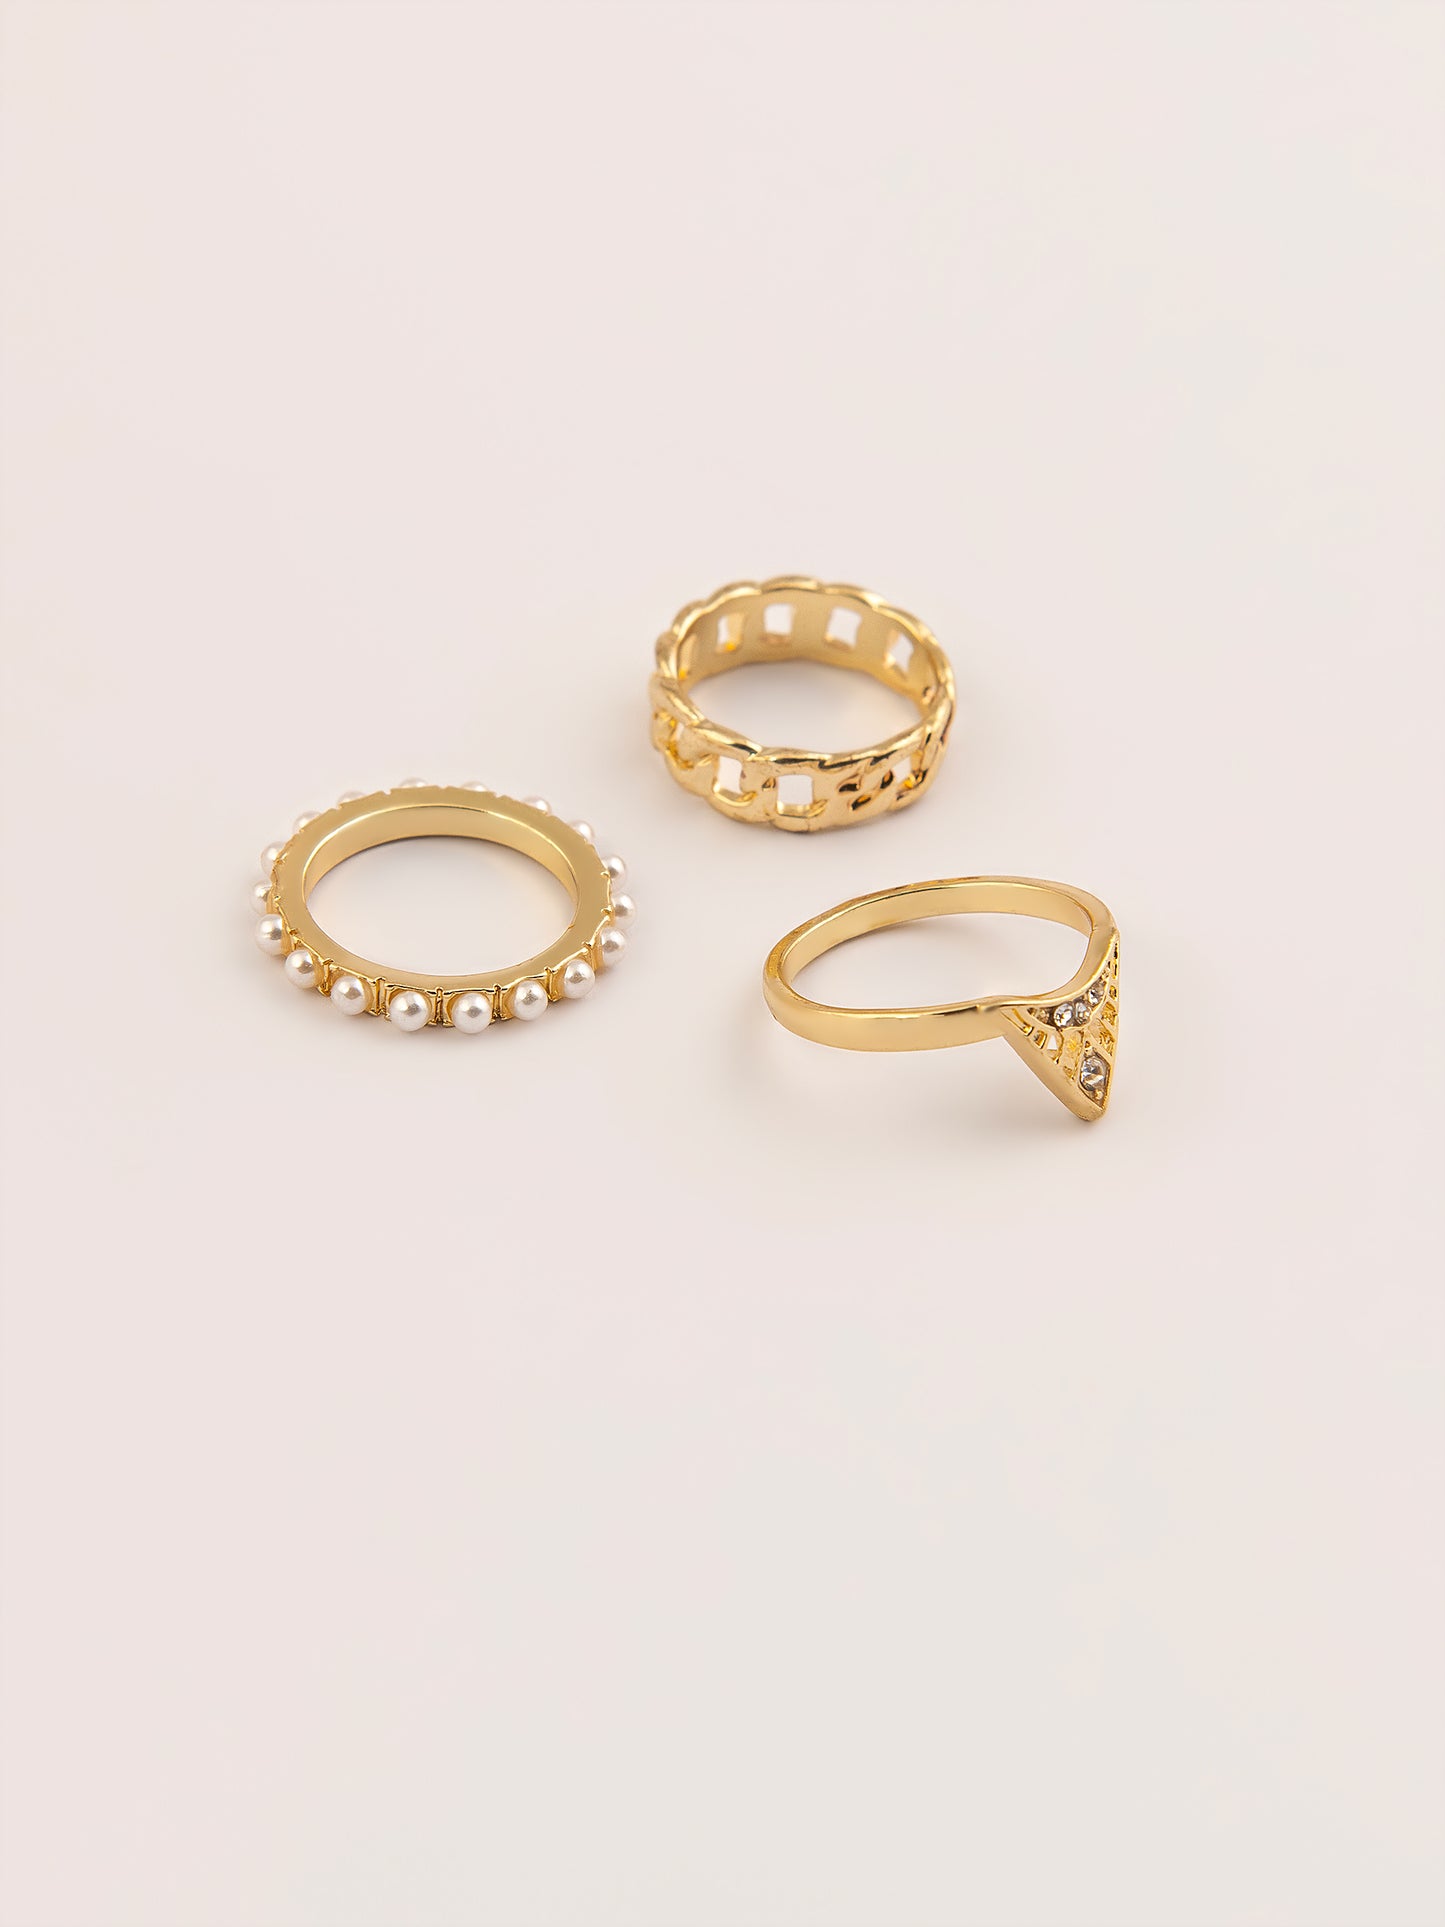 Vintage Gold Ring Set